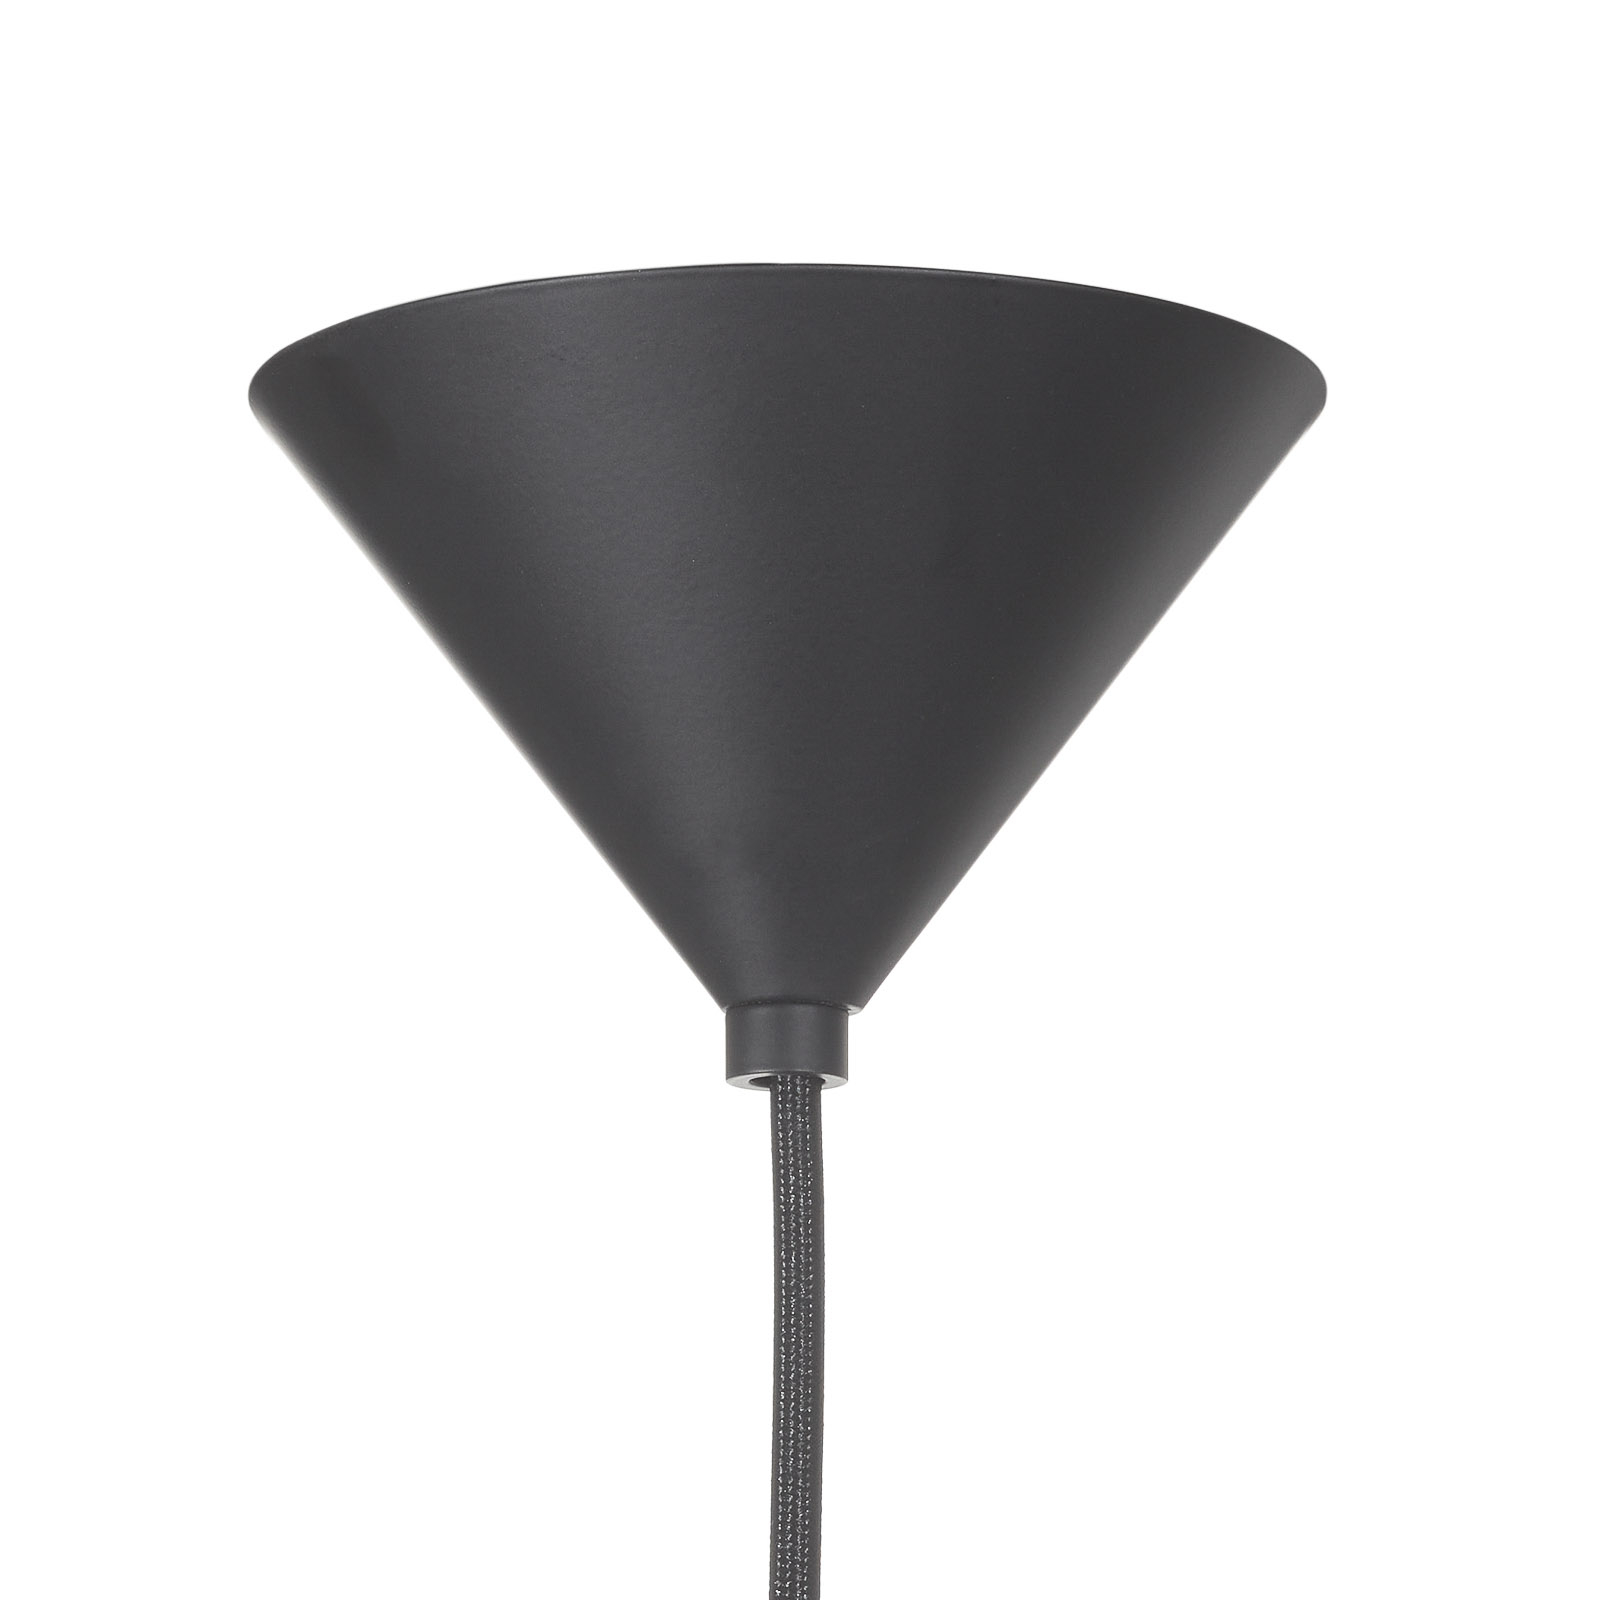 Tom Dixon Void LED hanglamp Ø 30 cm chroom